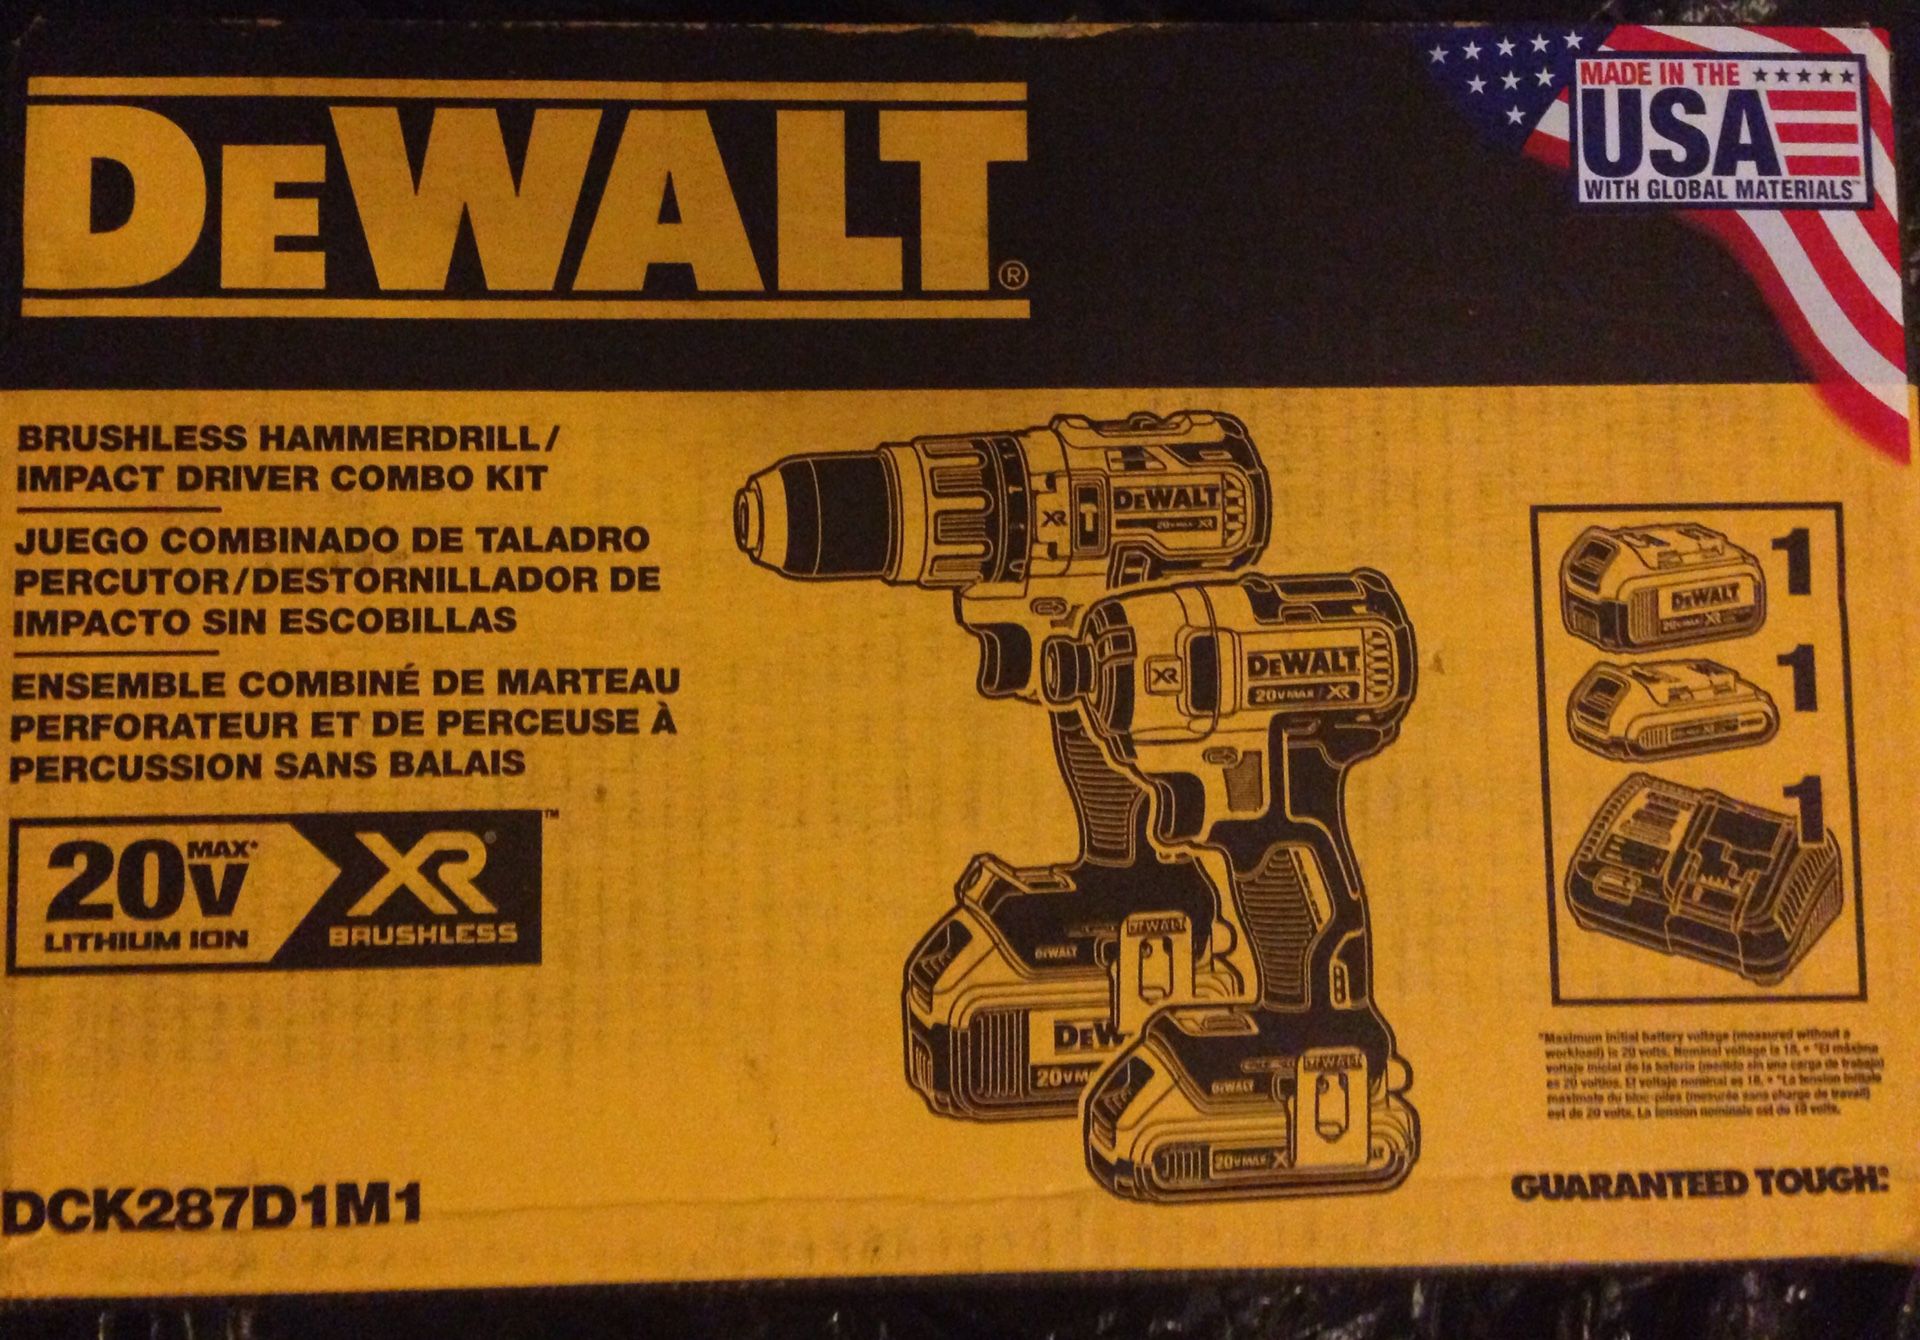 Dewalt Brushless hammer drill / impact driver combo kit